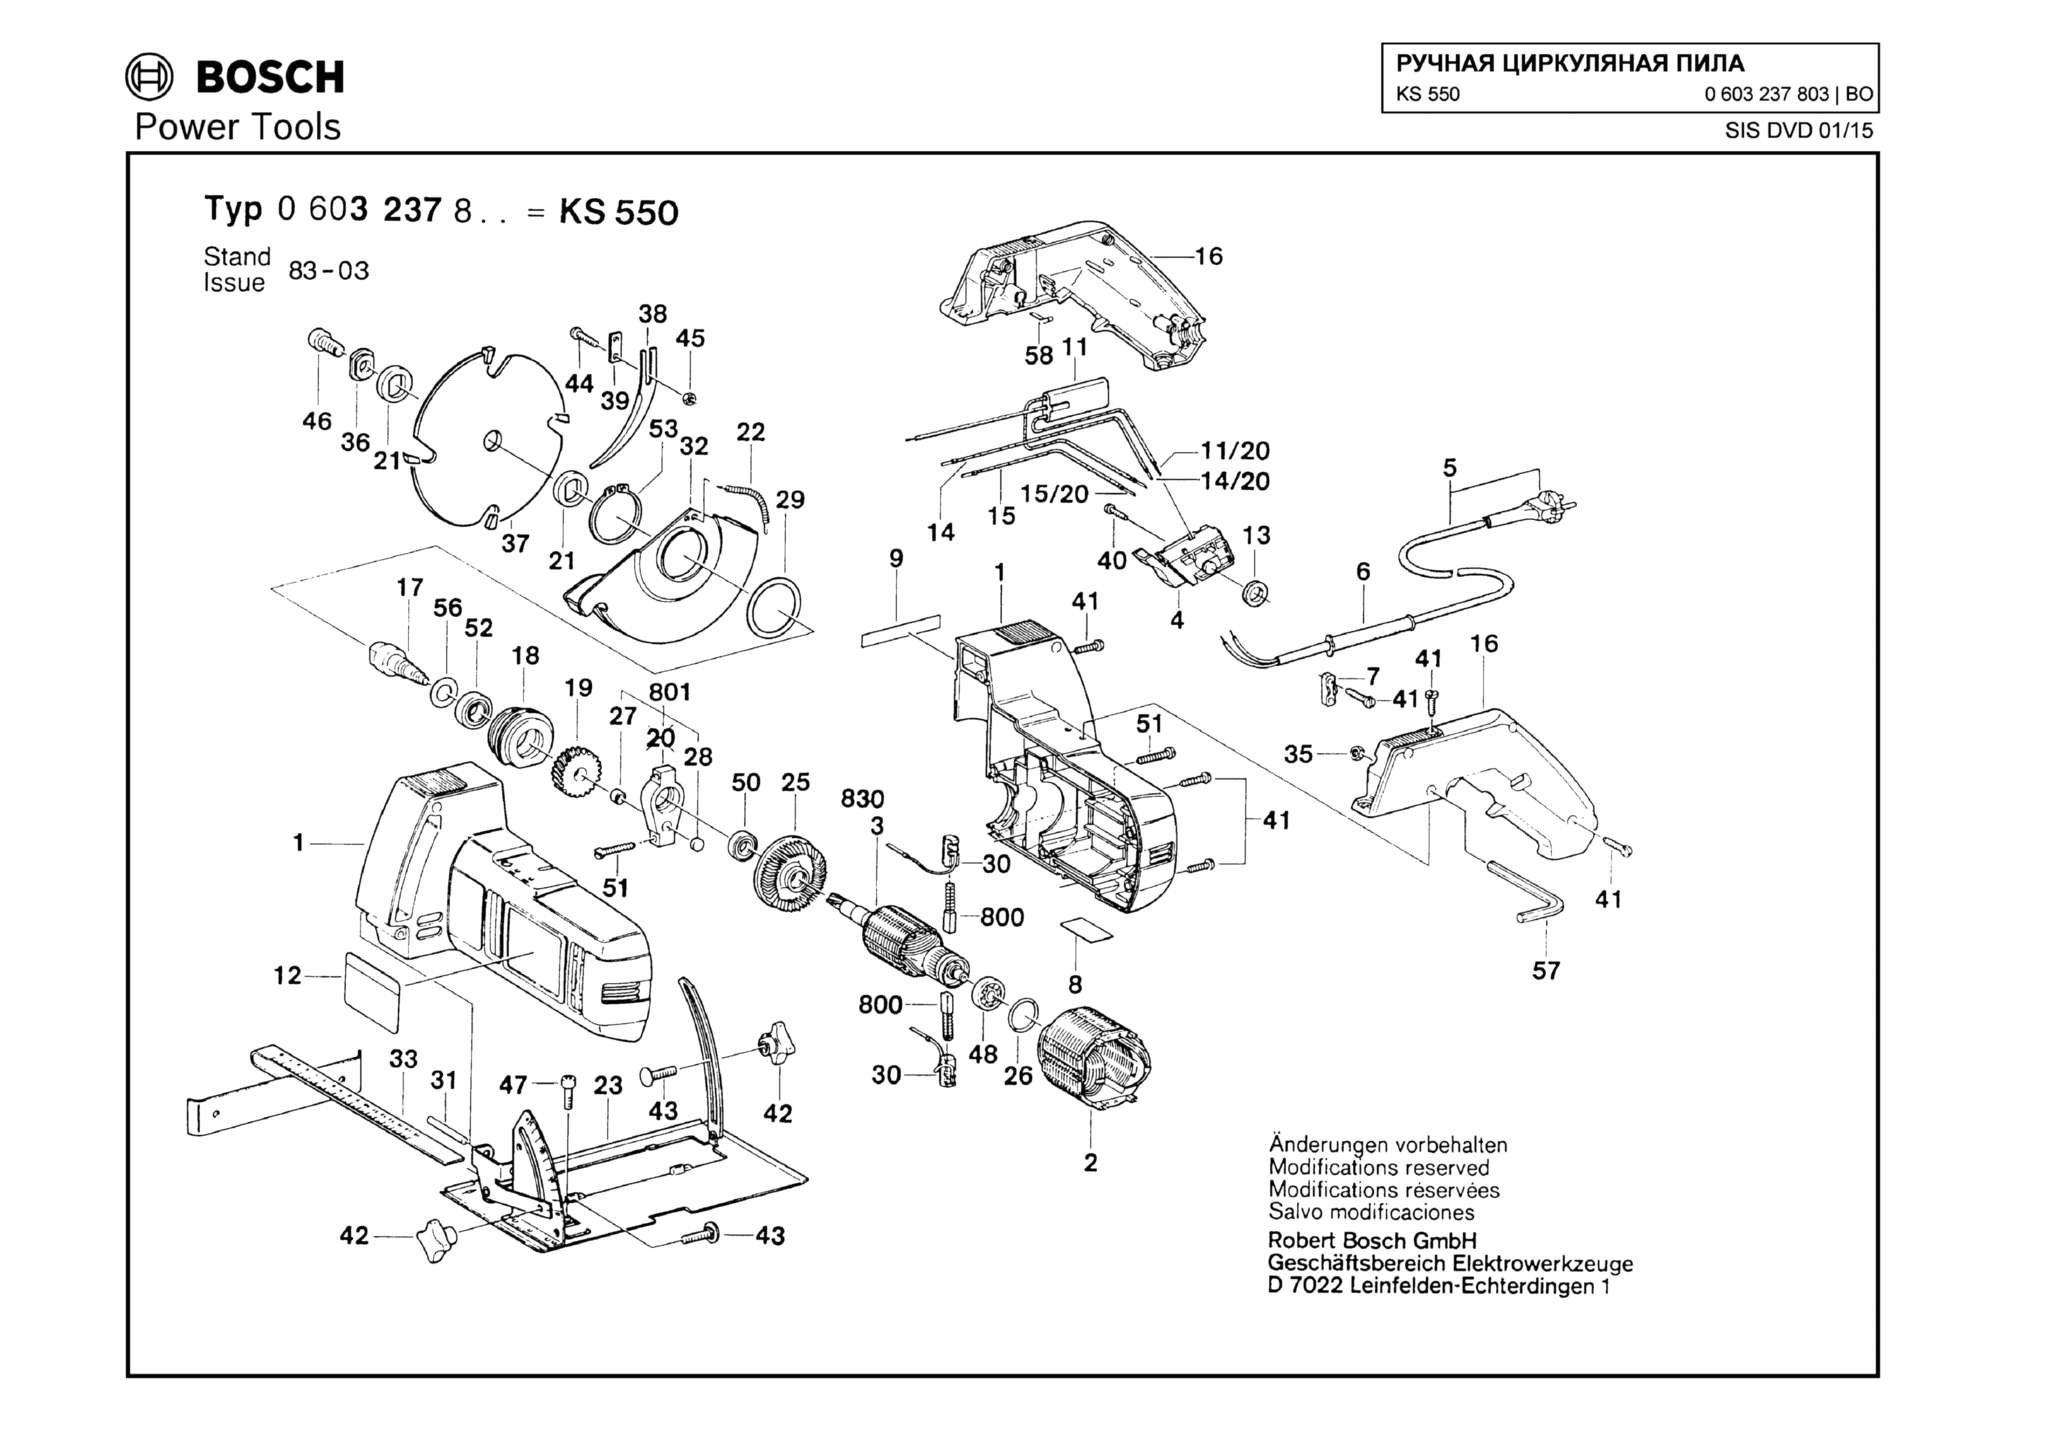 Запчасти, схема и деталировка Bosch KS 550 (ТИП 0603237803)